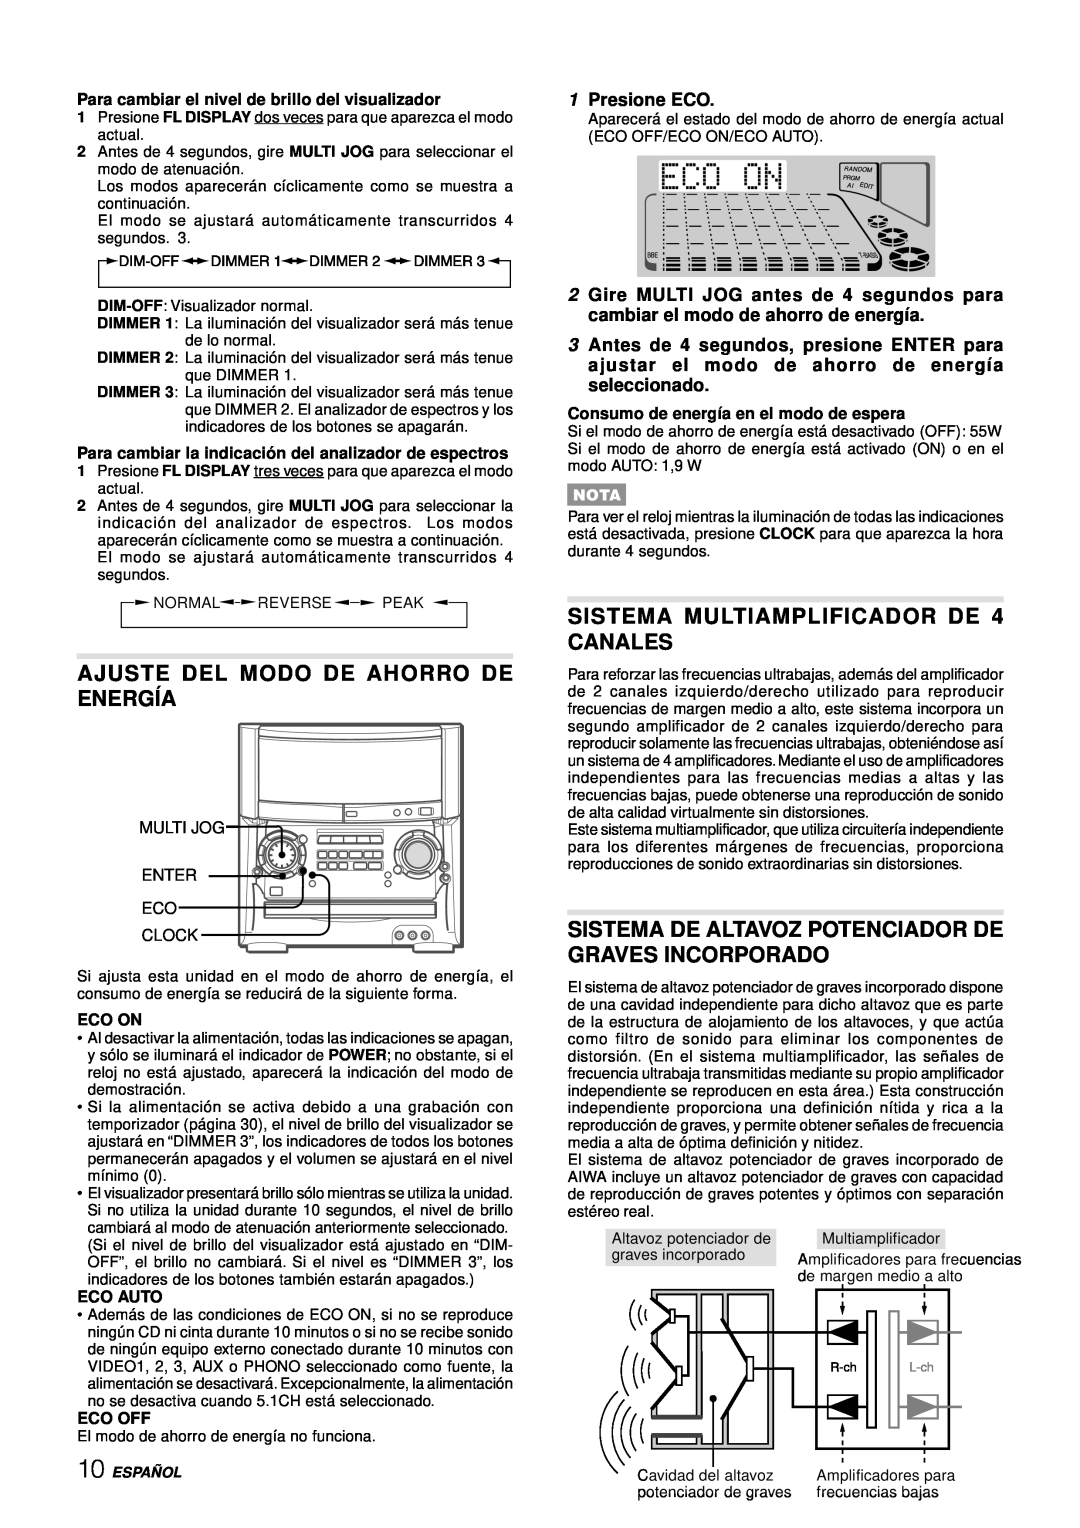 Aiwa XH-A1000 manual Ajuste Del Modo De Ahorro De Energía, SISTEMA MULTIAMPLIFICADOR DE 4 CANALES, 1Presione ECO 